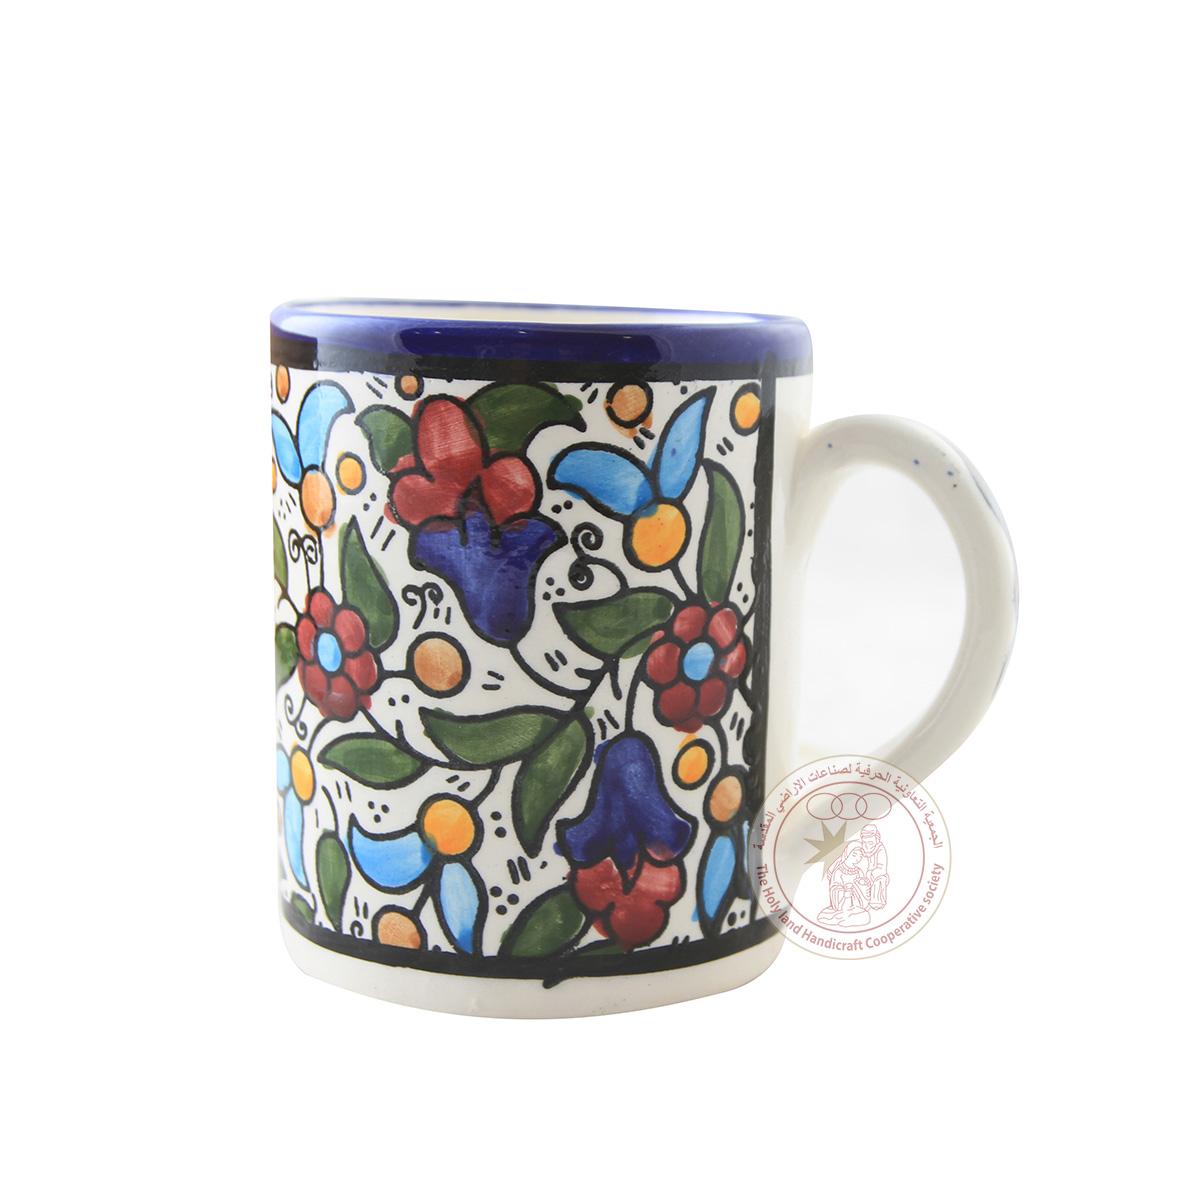 Multi-Colored Tulips' Mug - 7 CM, Ceramic